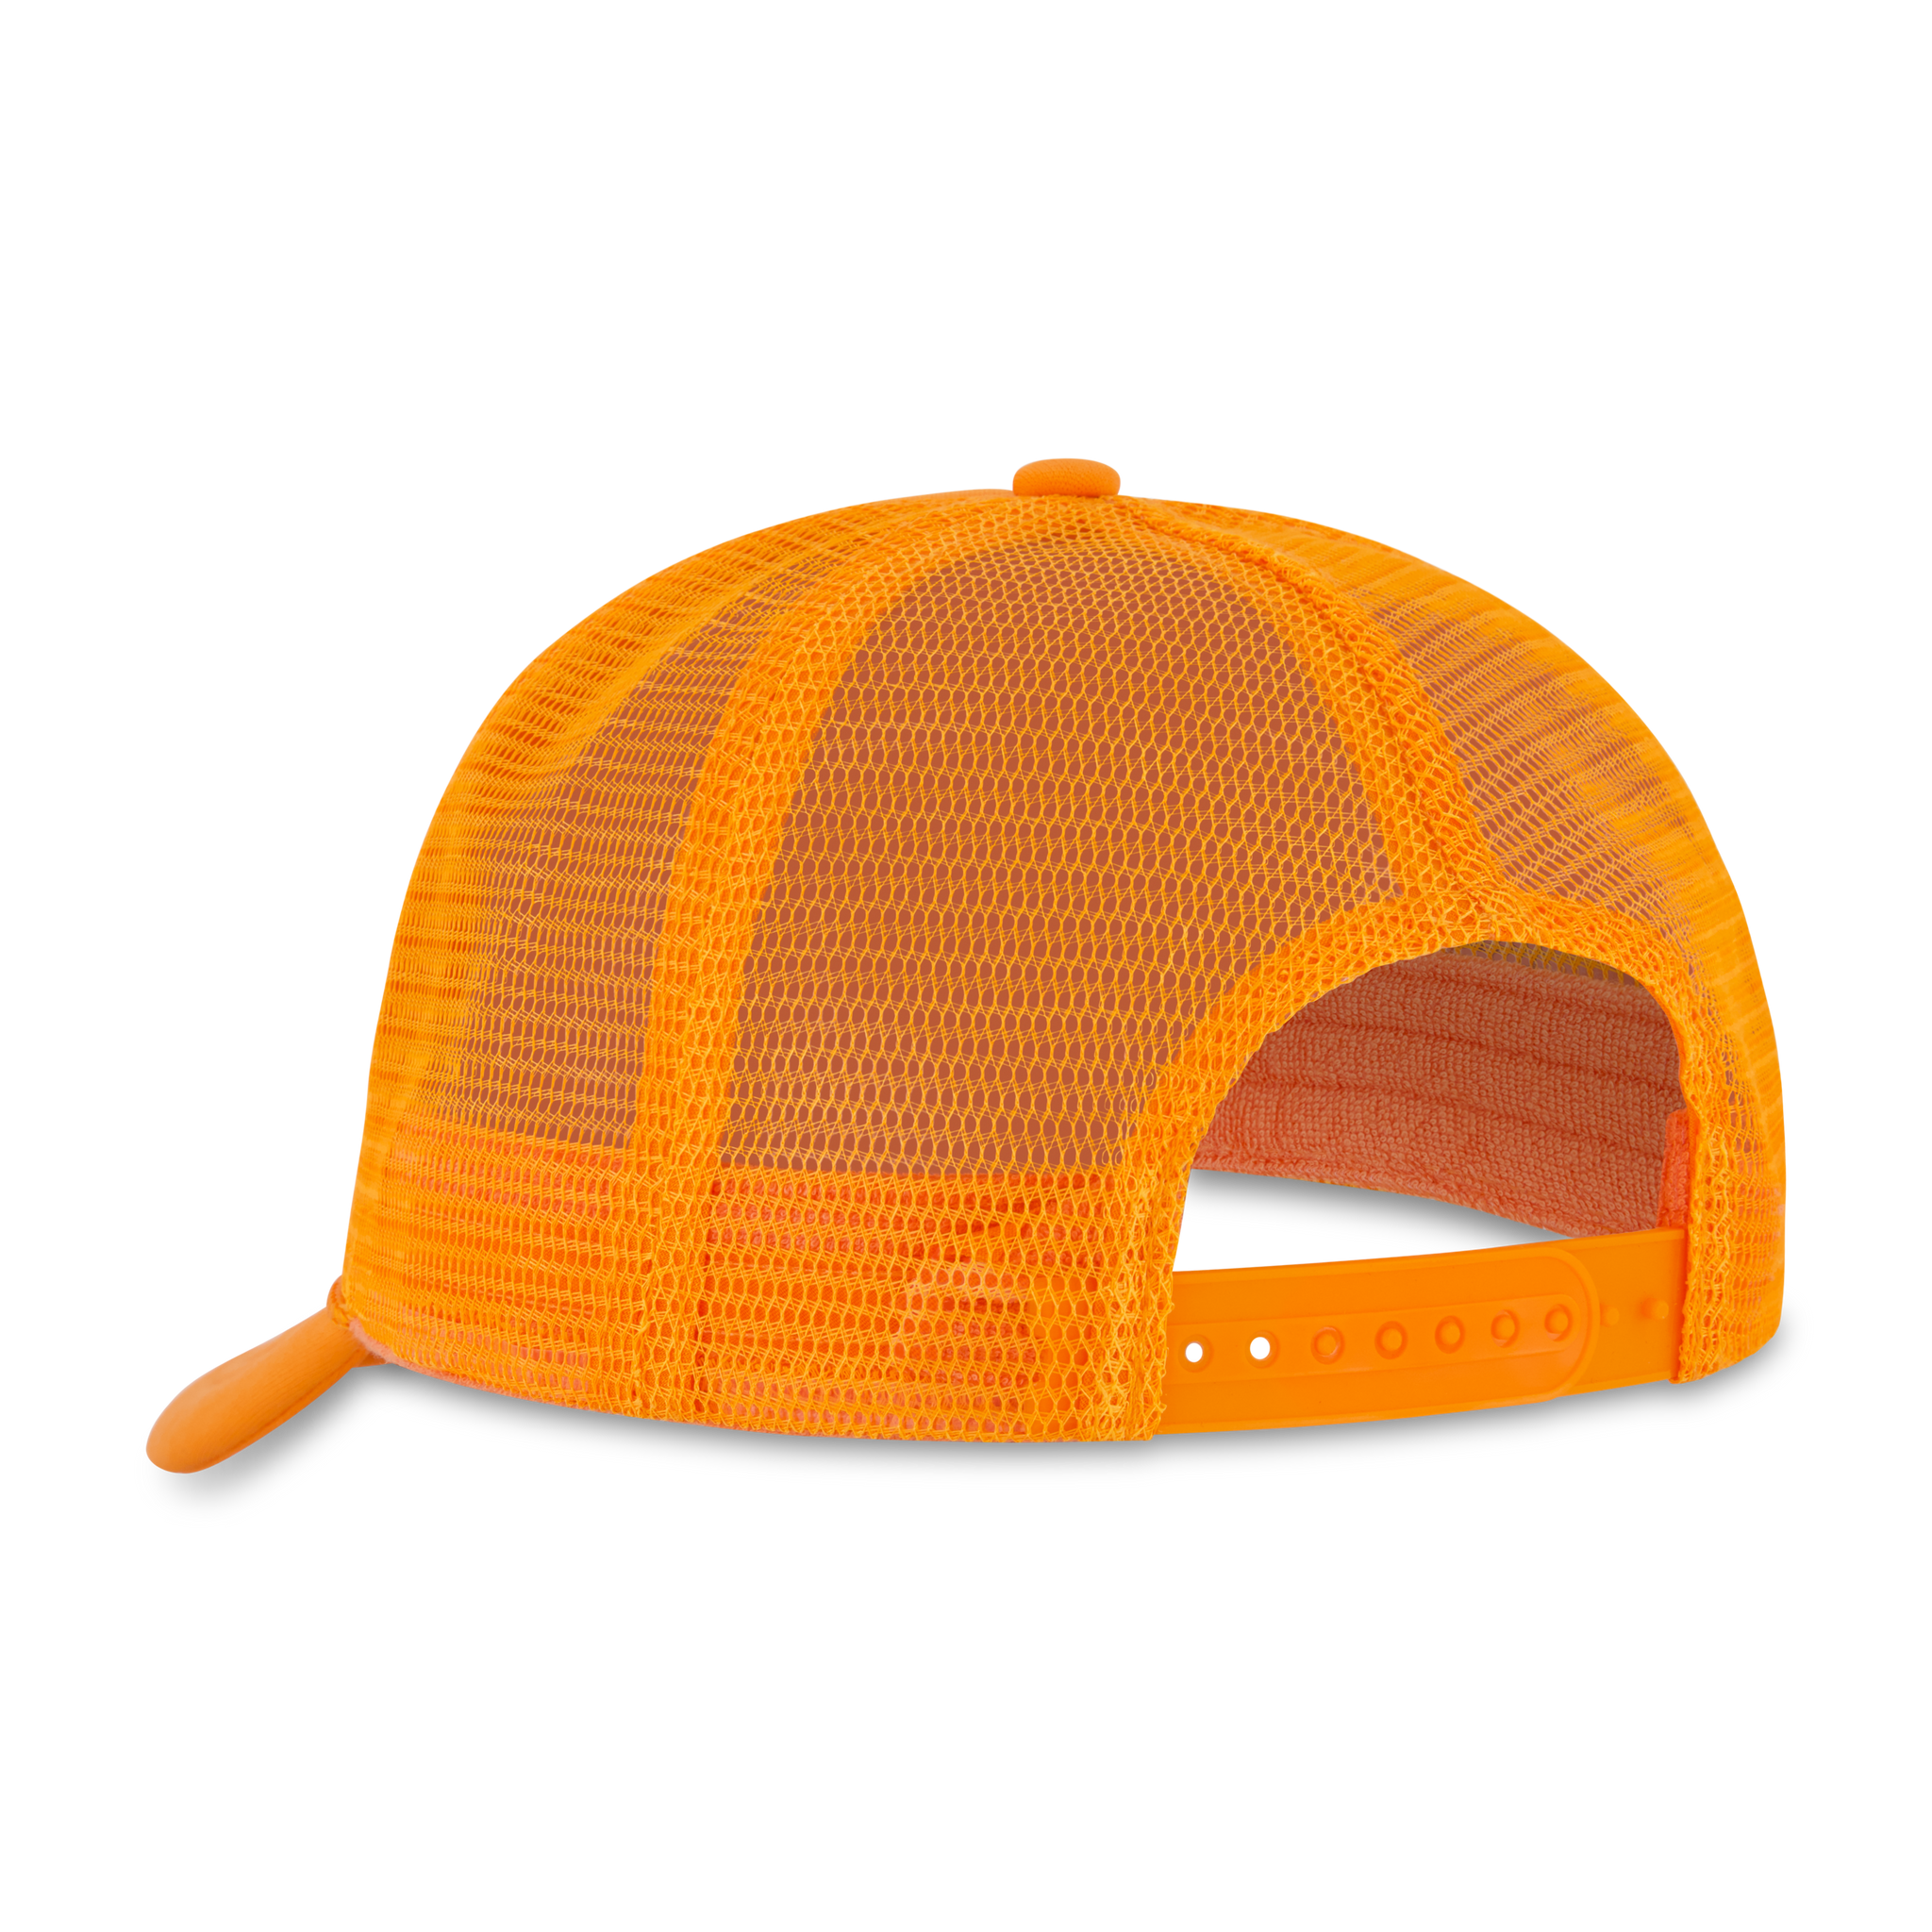 Chenille World Tour Orange Trucker Hat